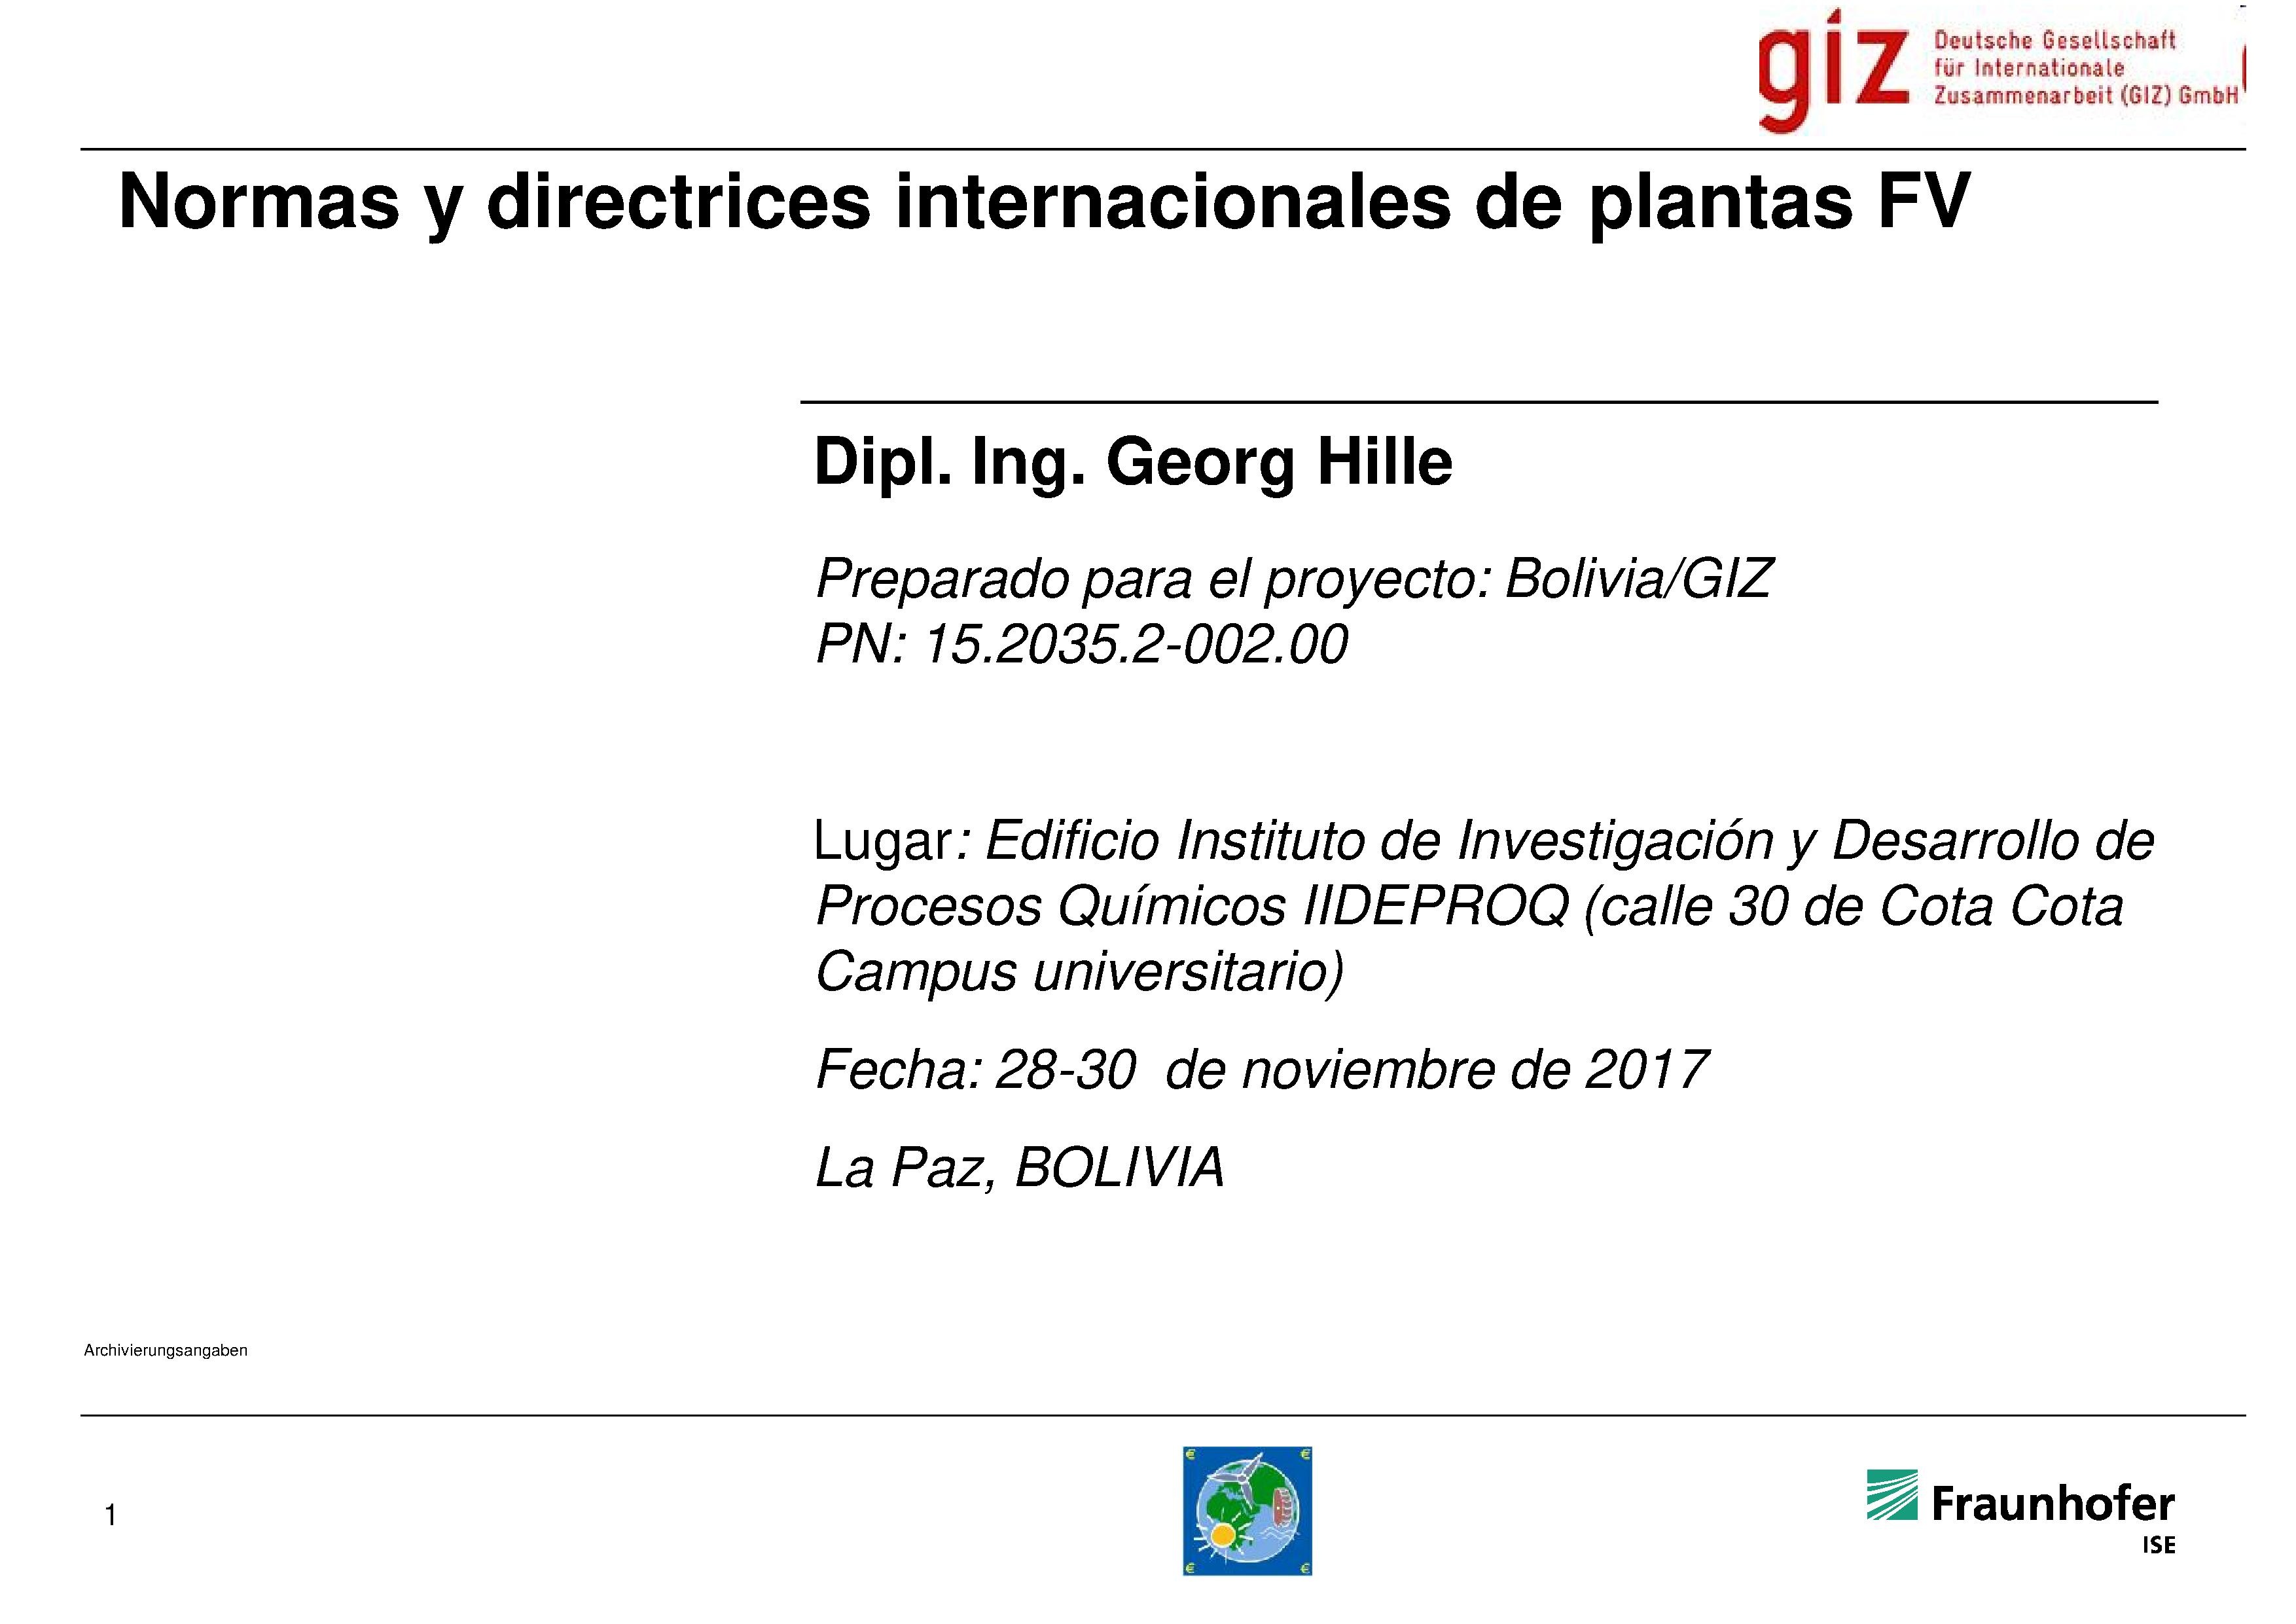 • Normas y directrices internacionales de plantas FV (Georg Hille)